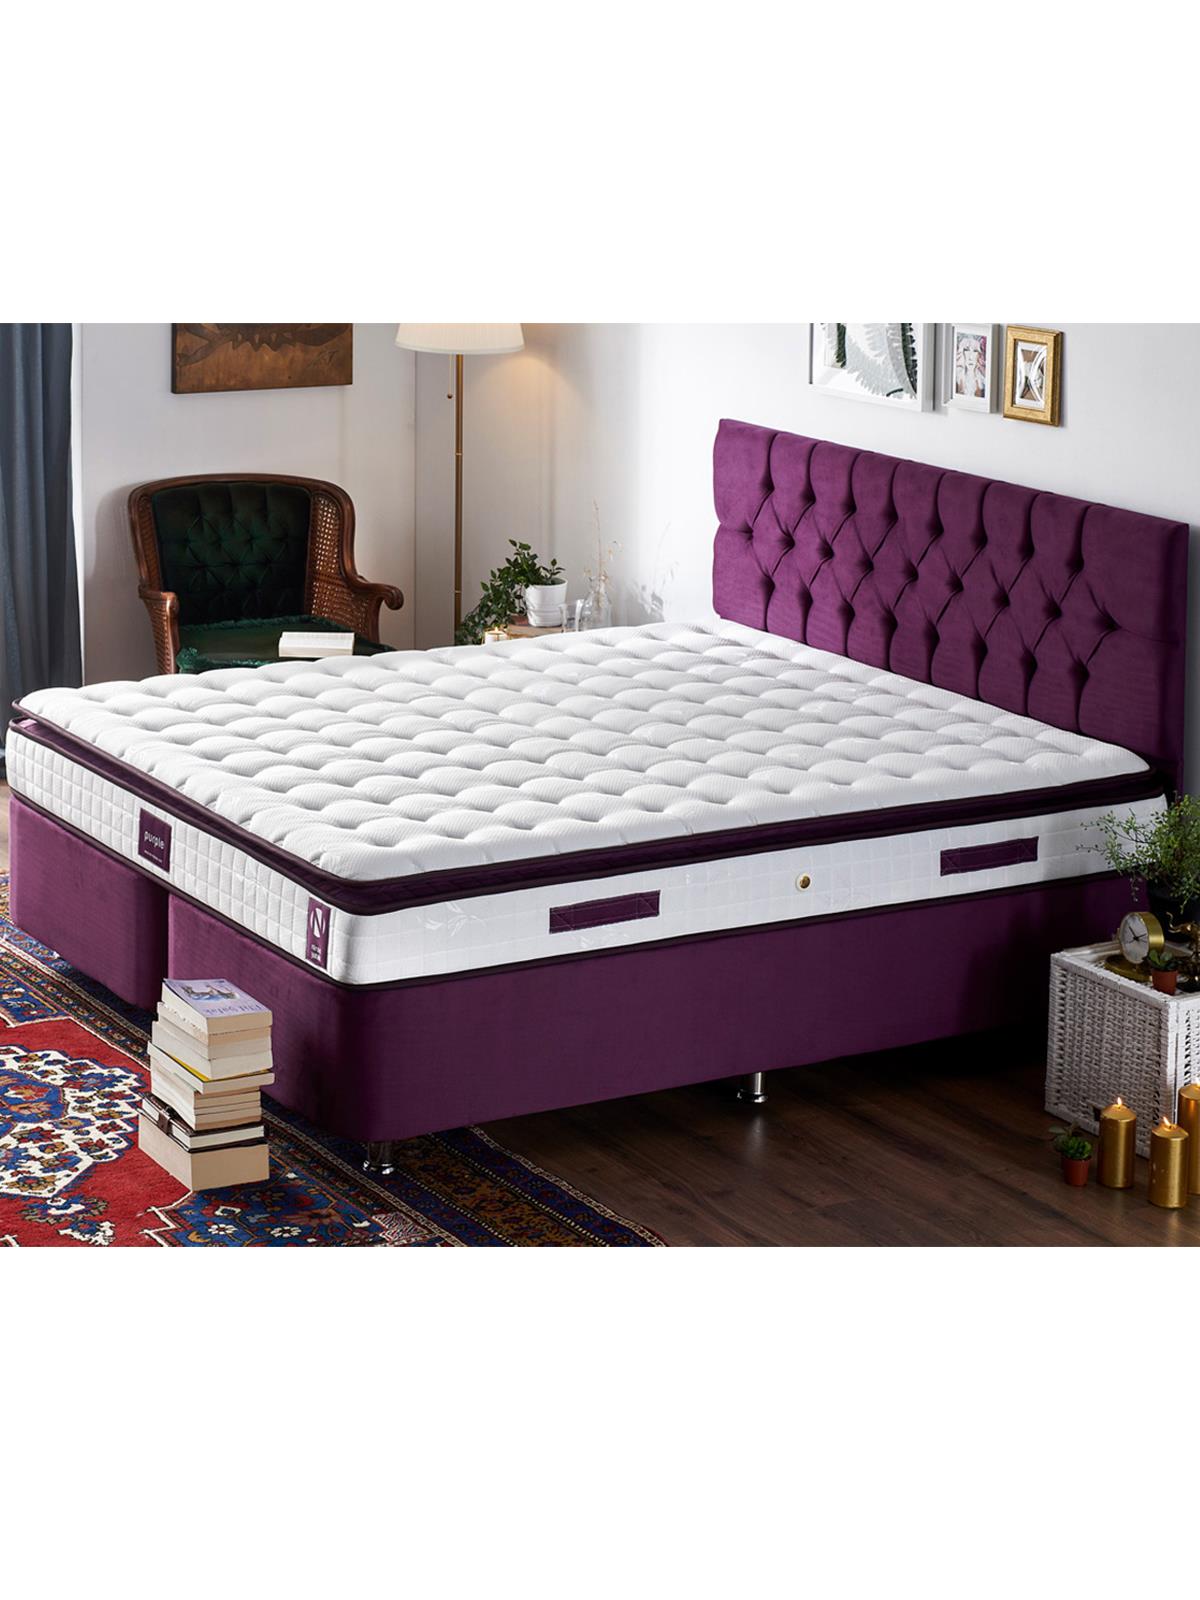 Niron Purple Yatak Seti 180x200 cm Çift Kişilik Yatak Baza Başlık Takımı Orta Sert Yatak Baza ve Başlığı Mor